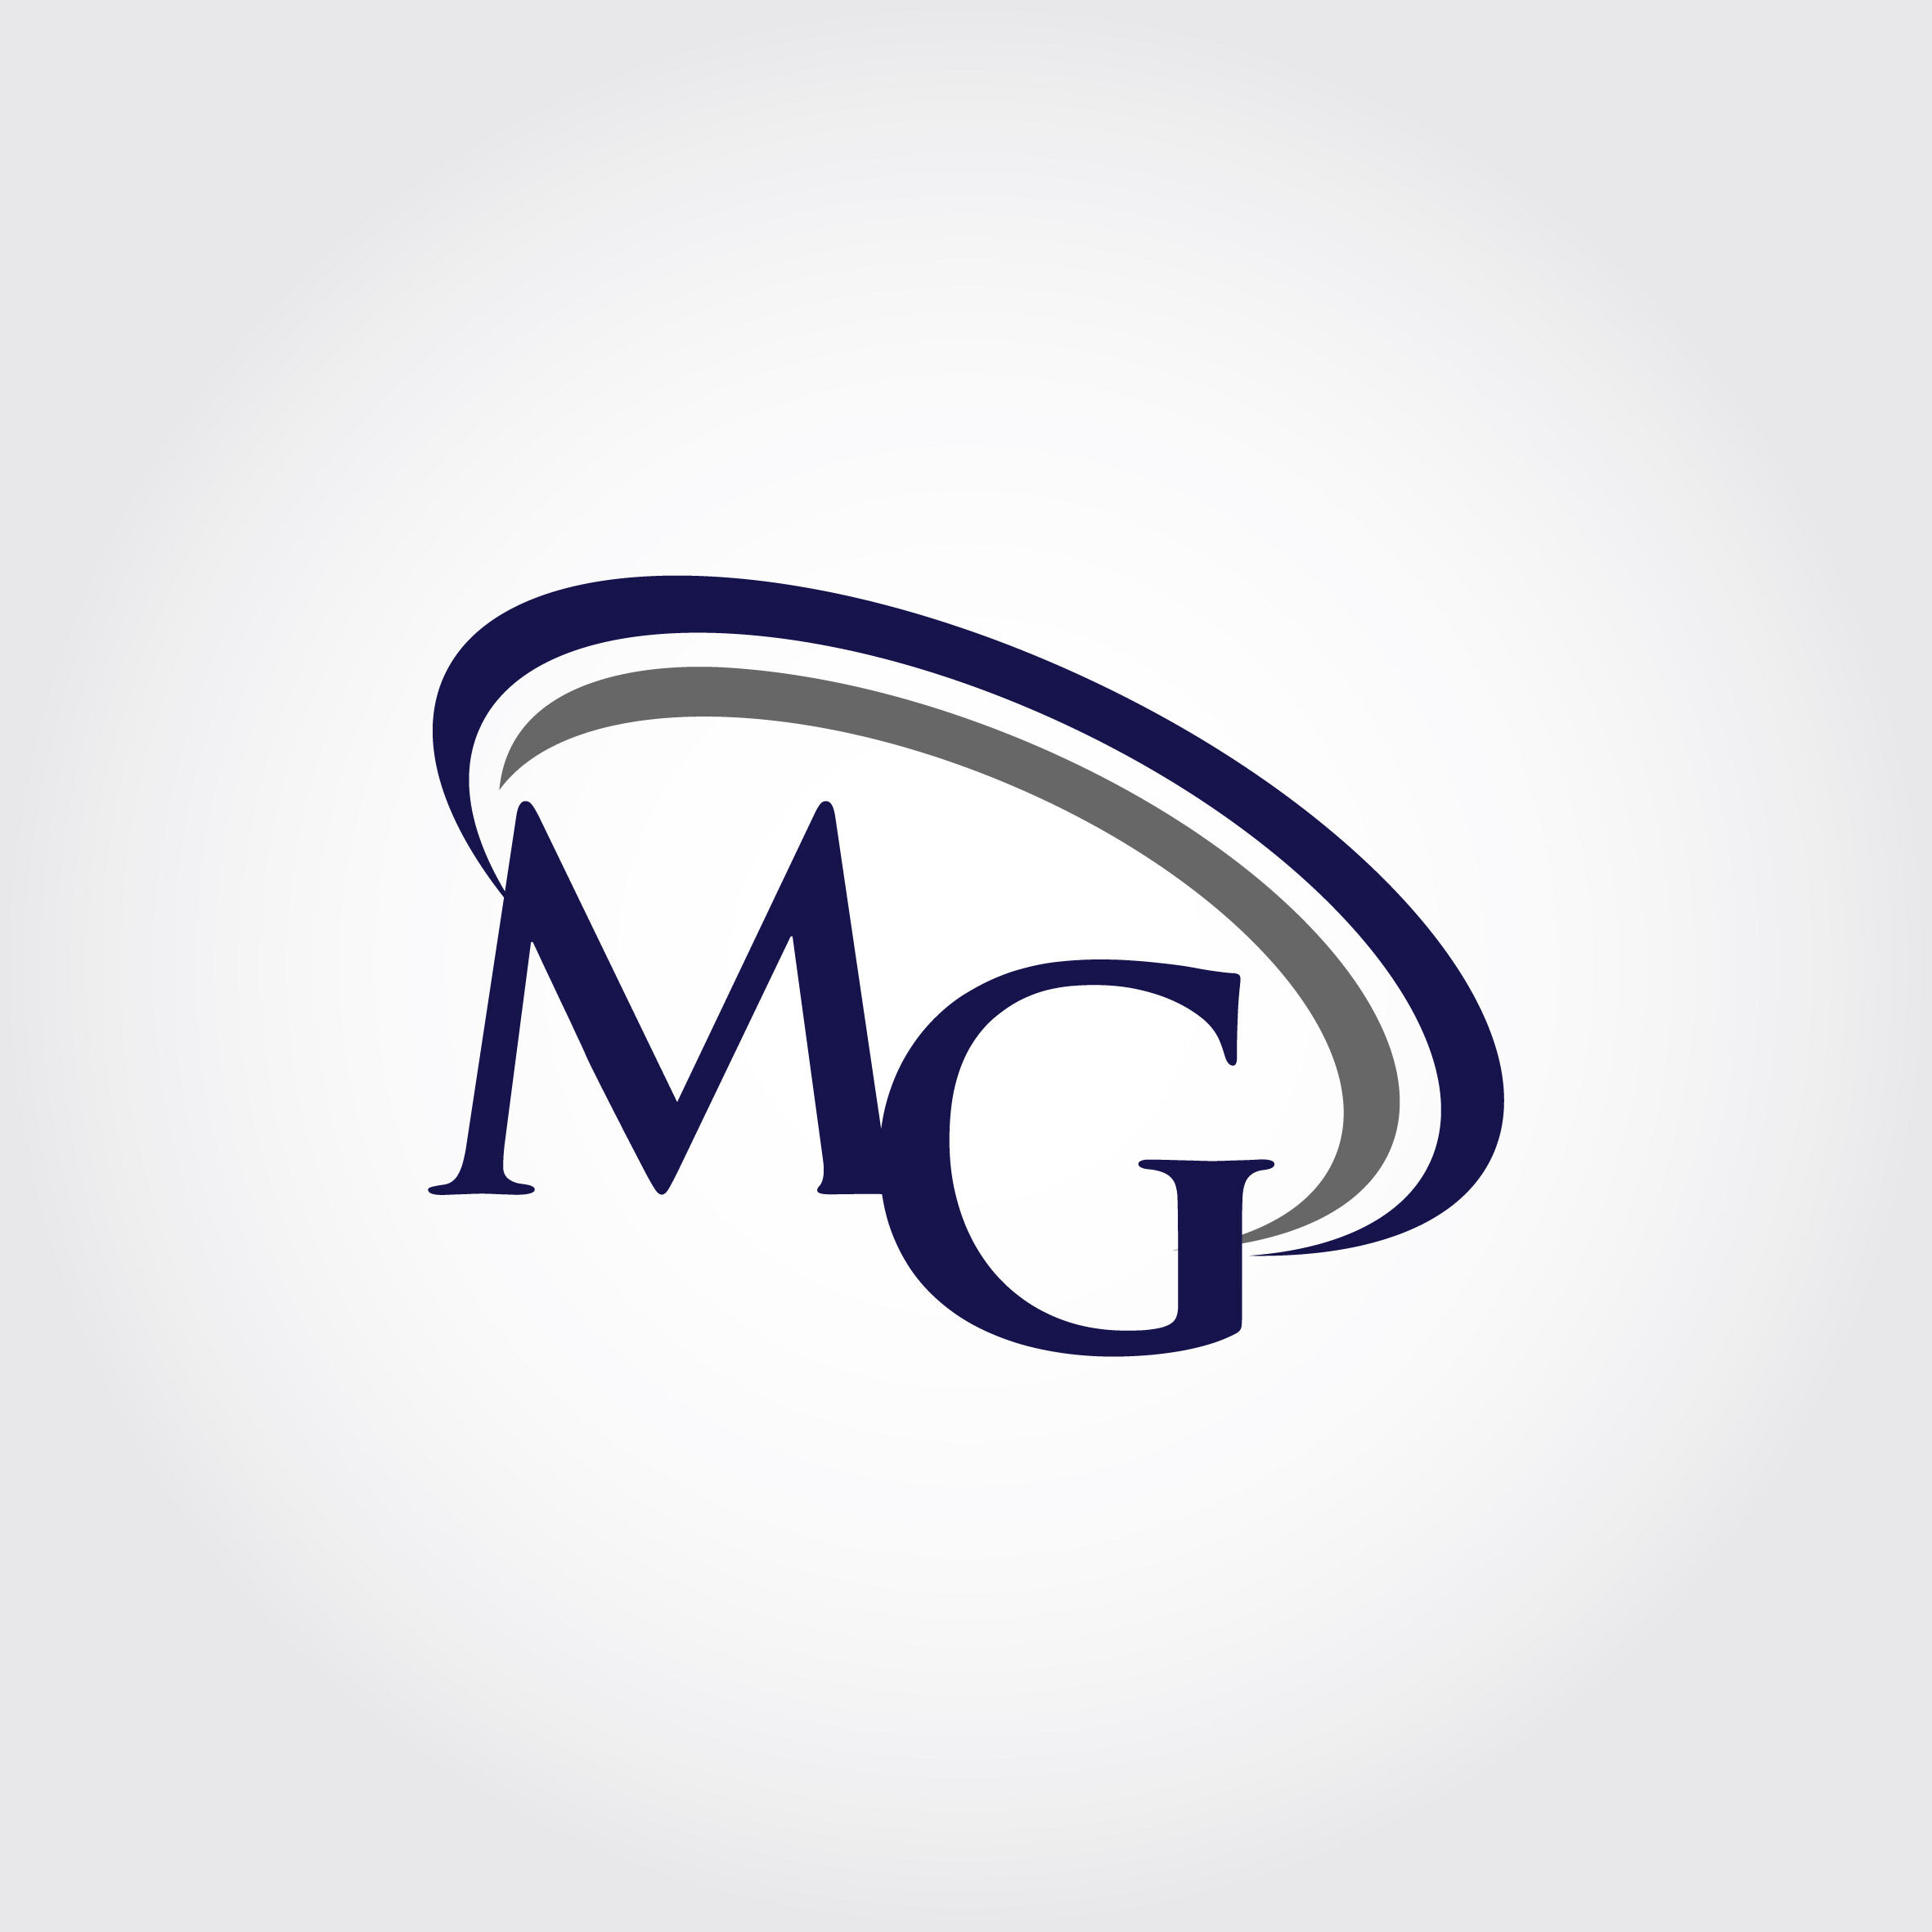 Mg logo, Logo design contest